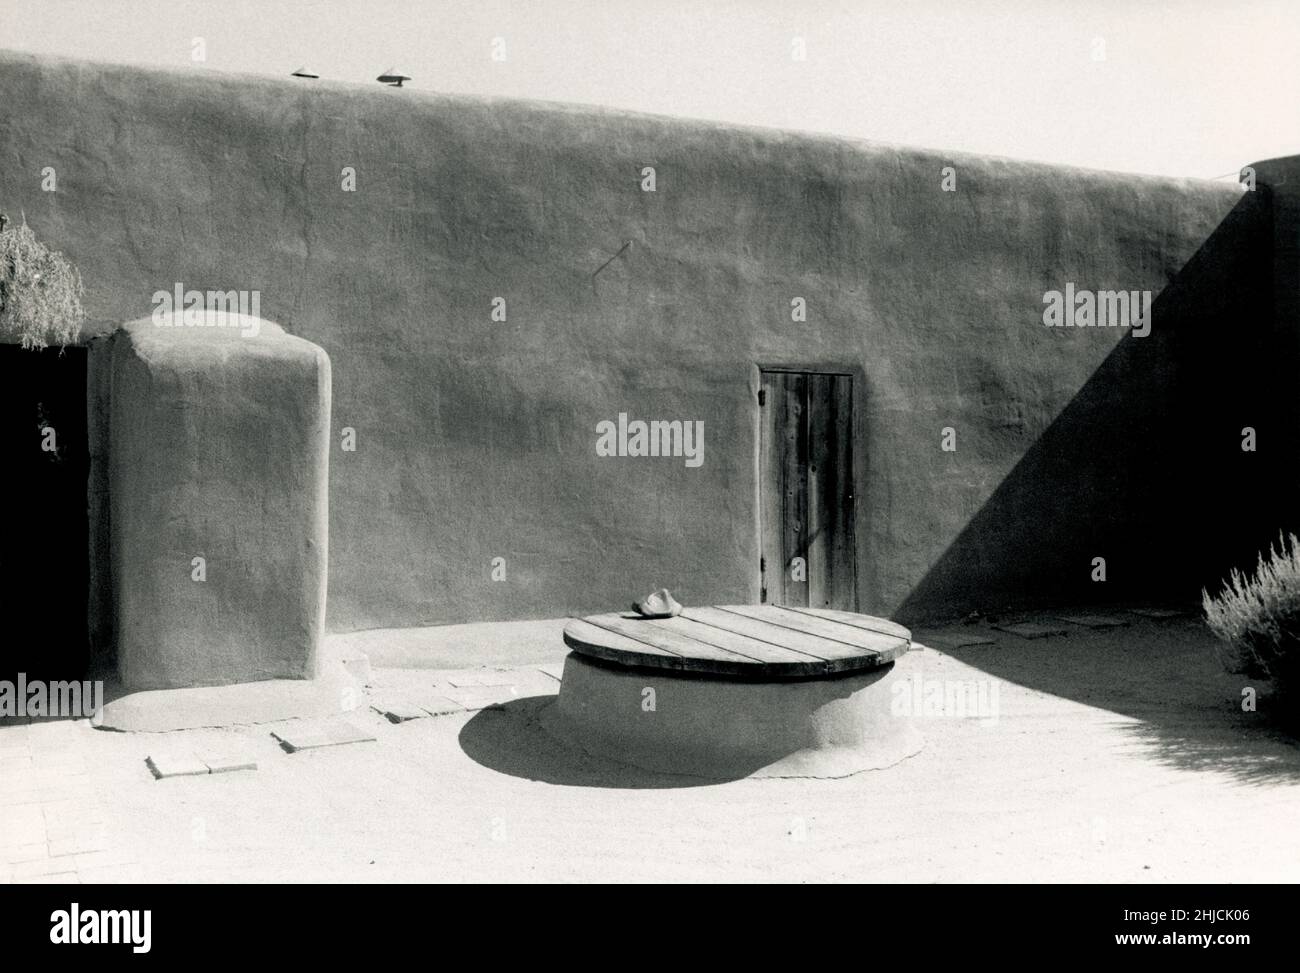 Patio der Ghost Ranch, der Residenz des Künstlers Georgia O'Keeffe, in Abiquiu, New Mexico. 1971. O'Keeffe war ein bedeutender moderner Künstler, dessen Werk von abstrakt bis gegenständlich reichte und oft beides verschmolz. Geboren 1887, gestorben 1986. Stockfoto